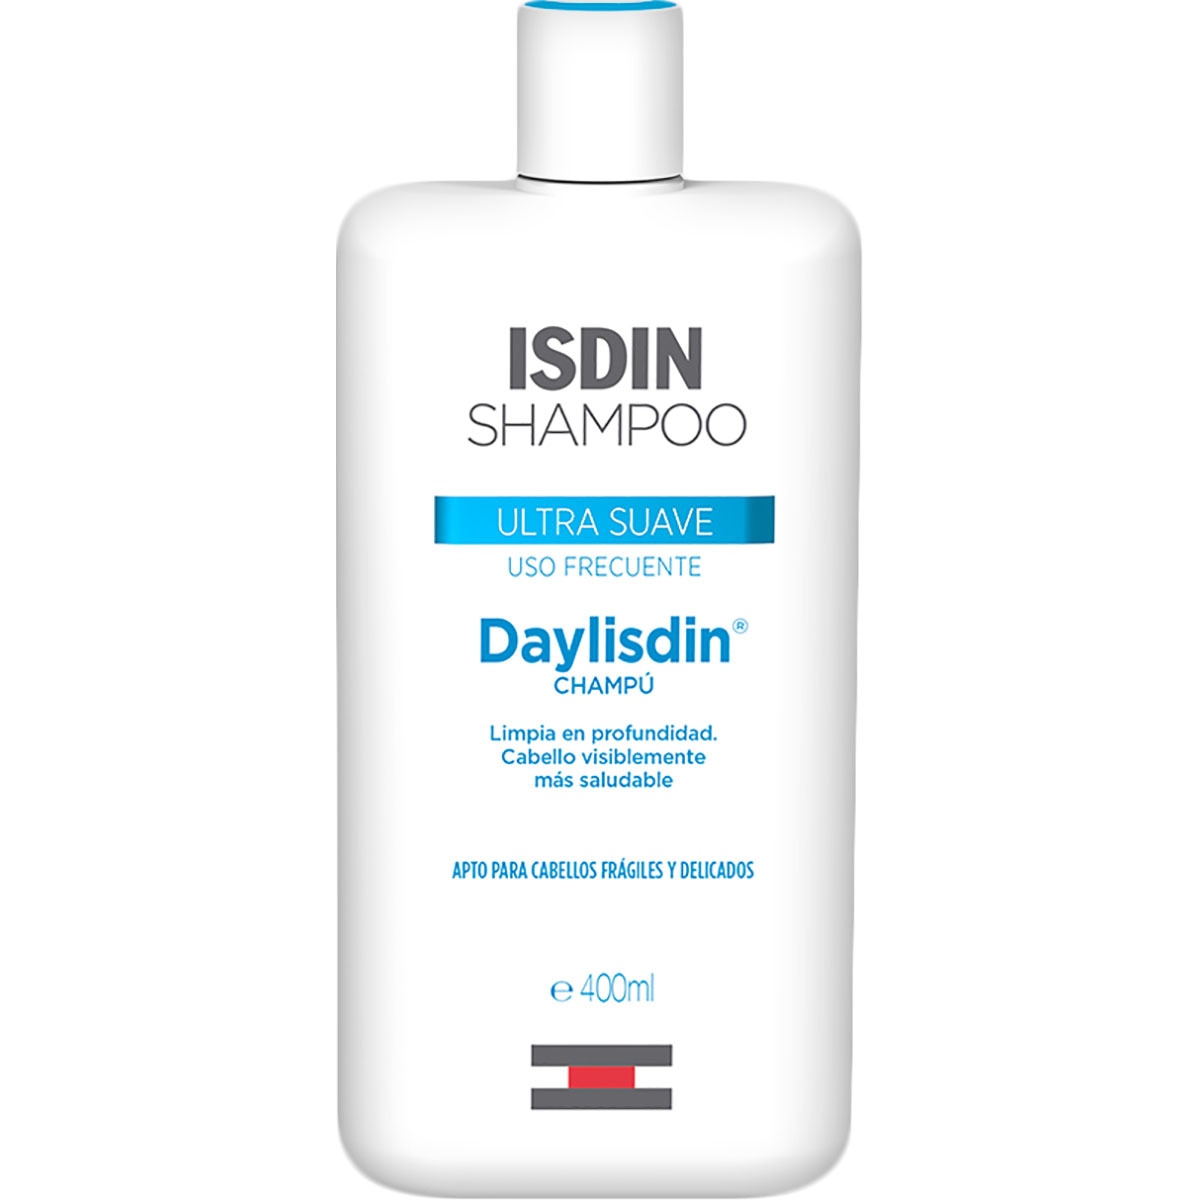 Comprar ISDIN Daylisdin en Gran Farmacia Andorra champú muy suave para cabellos delicados y frágiles uso frecuente frasco 500 ml